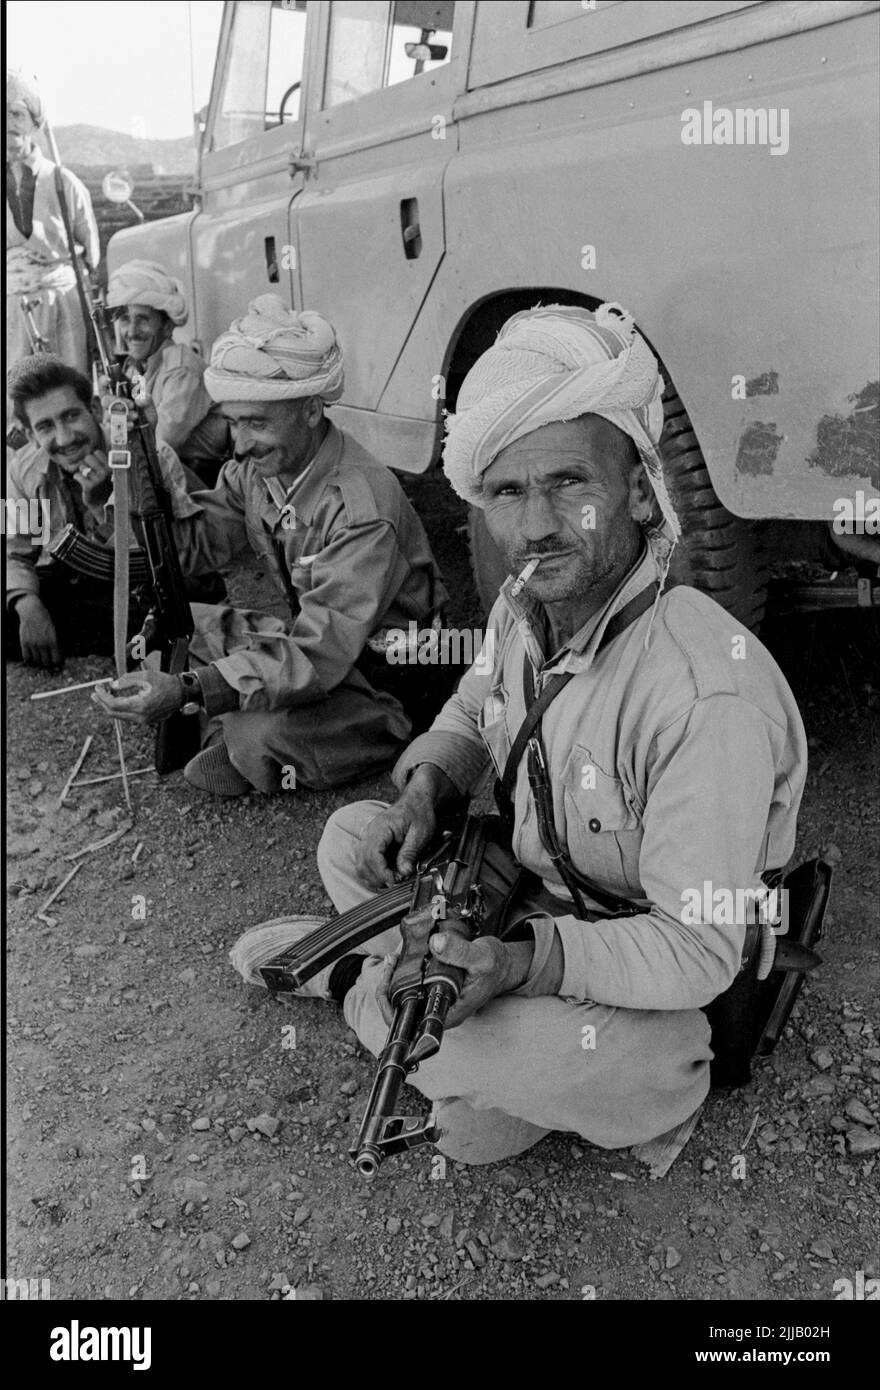 Les guérilleros peshmerga kurdes dans les montagnes du nord de l'Irak, menés par le combattant de l'indépendance Mustafa Barzani, lors d'une brève trêve avec le gouvernement irakien. 1969. Le journaliste Logan Gourlay et moi-même avons pris l’avion en hélicoptère militaire russe de l’armée de l’air irakienne. Le gouvernement voulait montrer qu'ils n'étaient pas en guerre avec les Kurdes. JE Banque D'Images